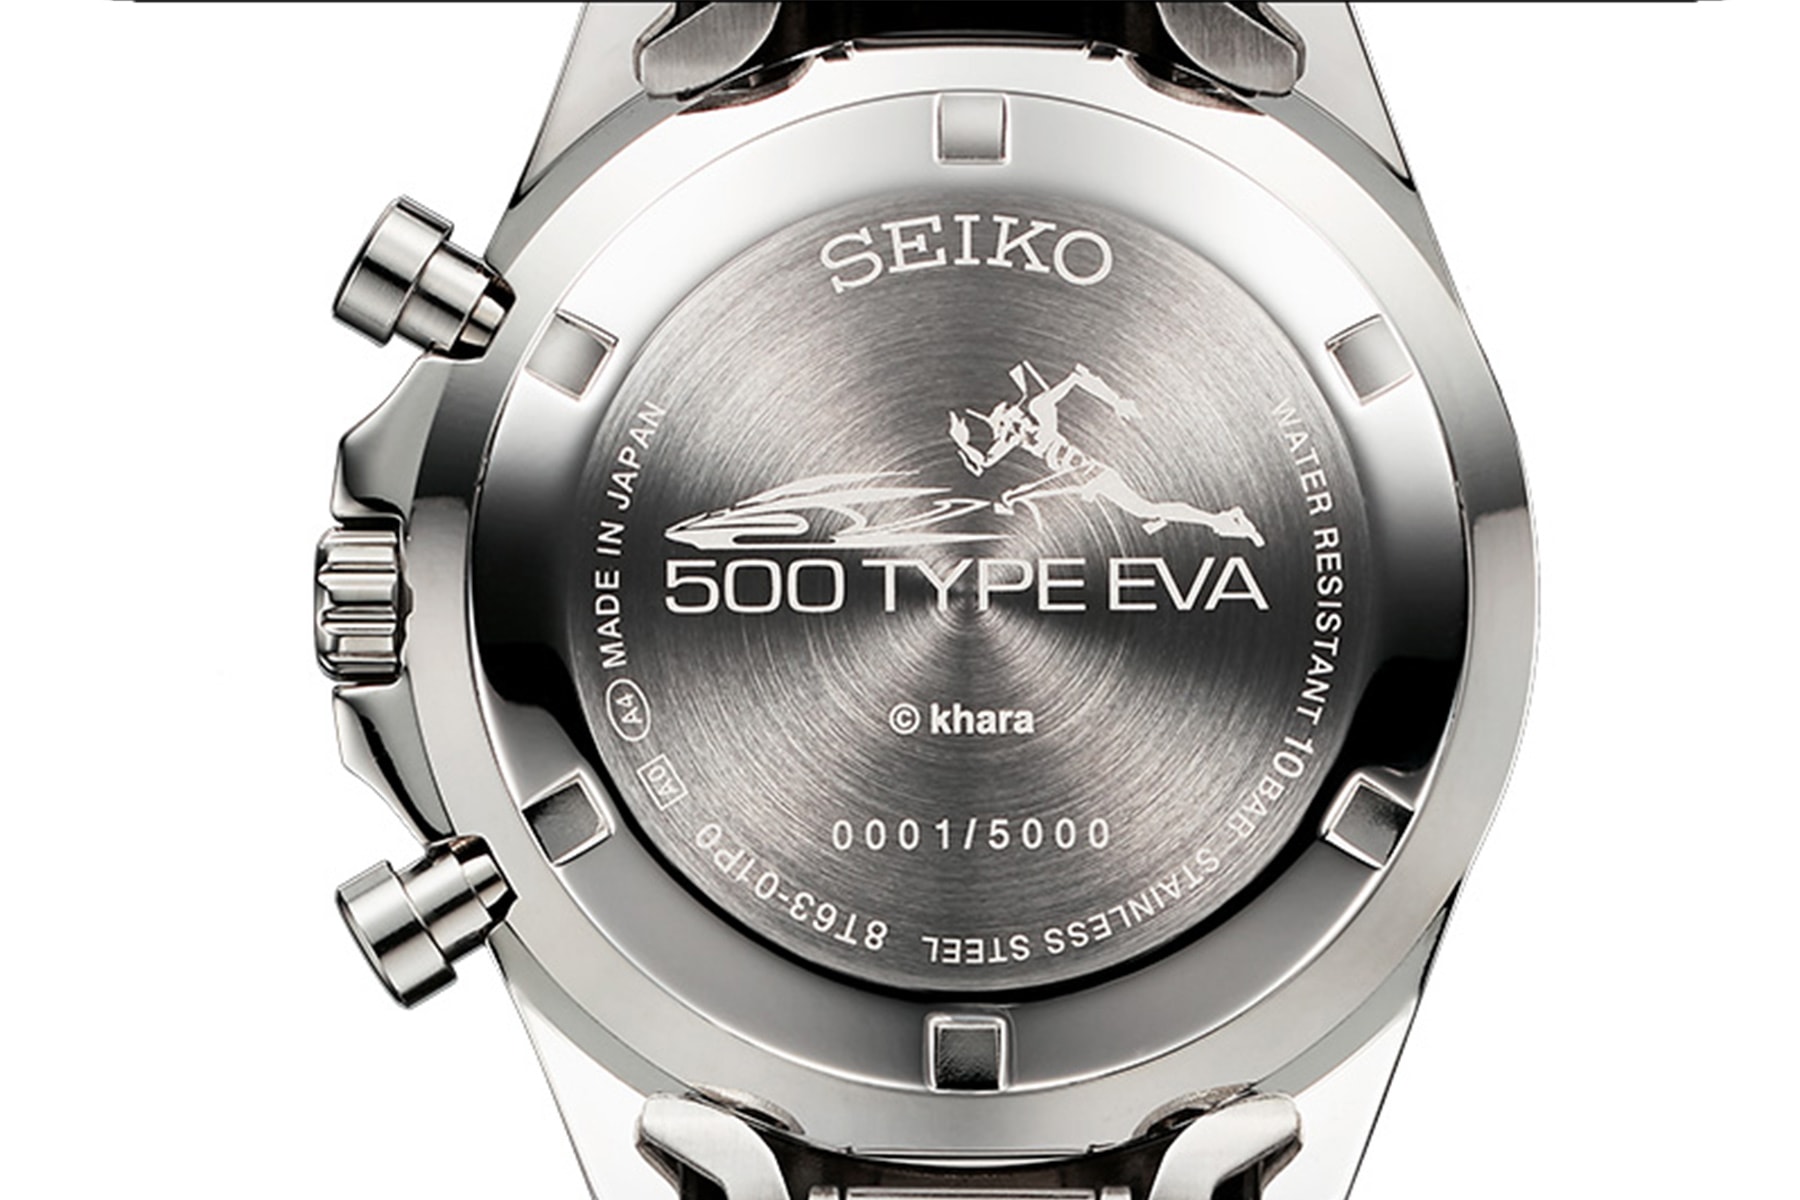 《新世紀福音戰士 Evangelion》x Seiko 全新聯乘錶款正式登場